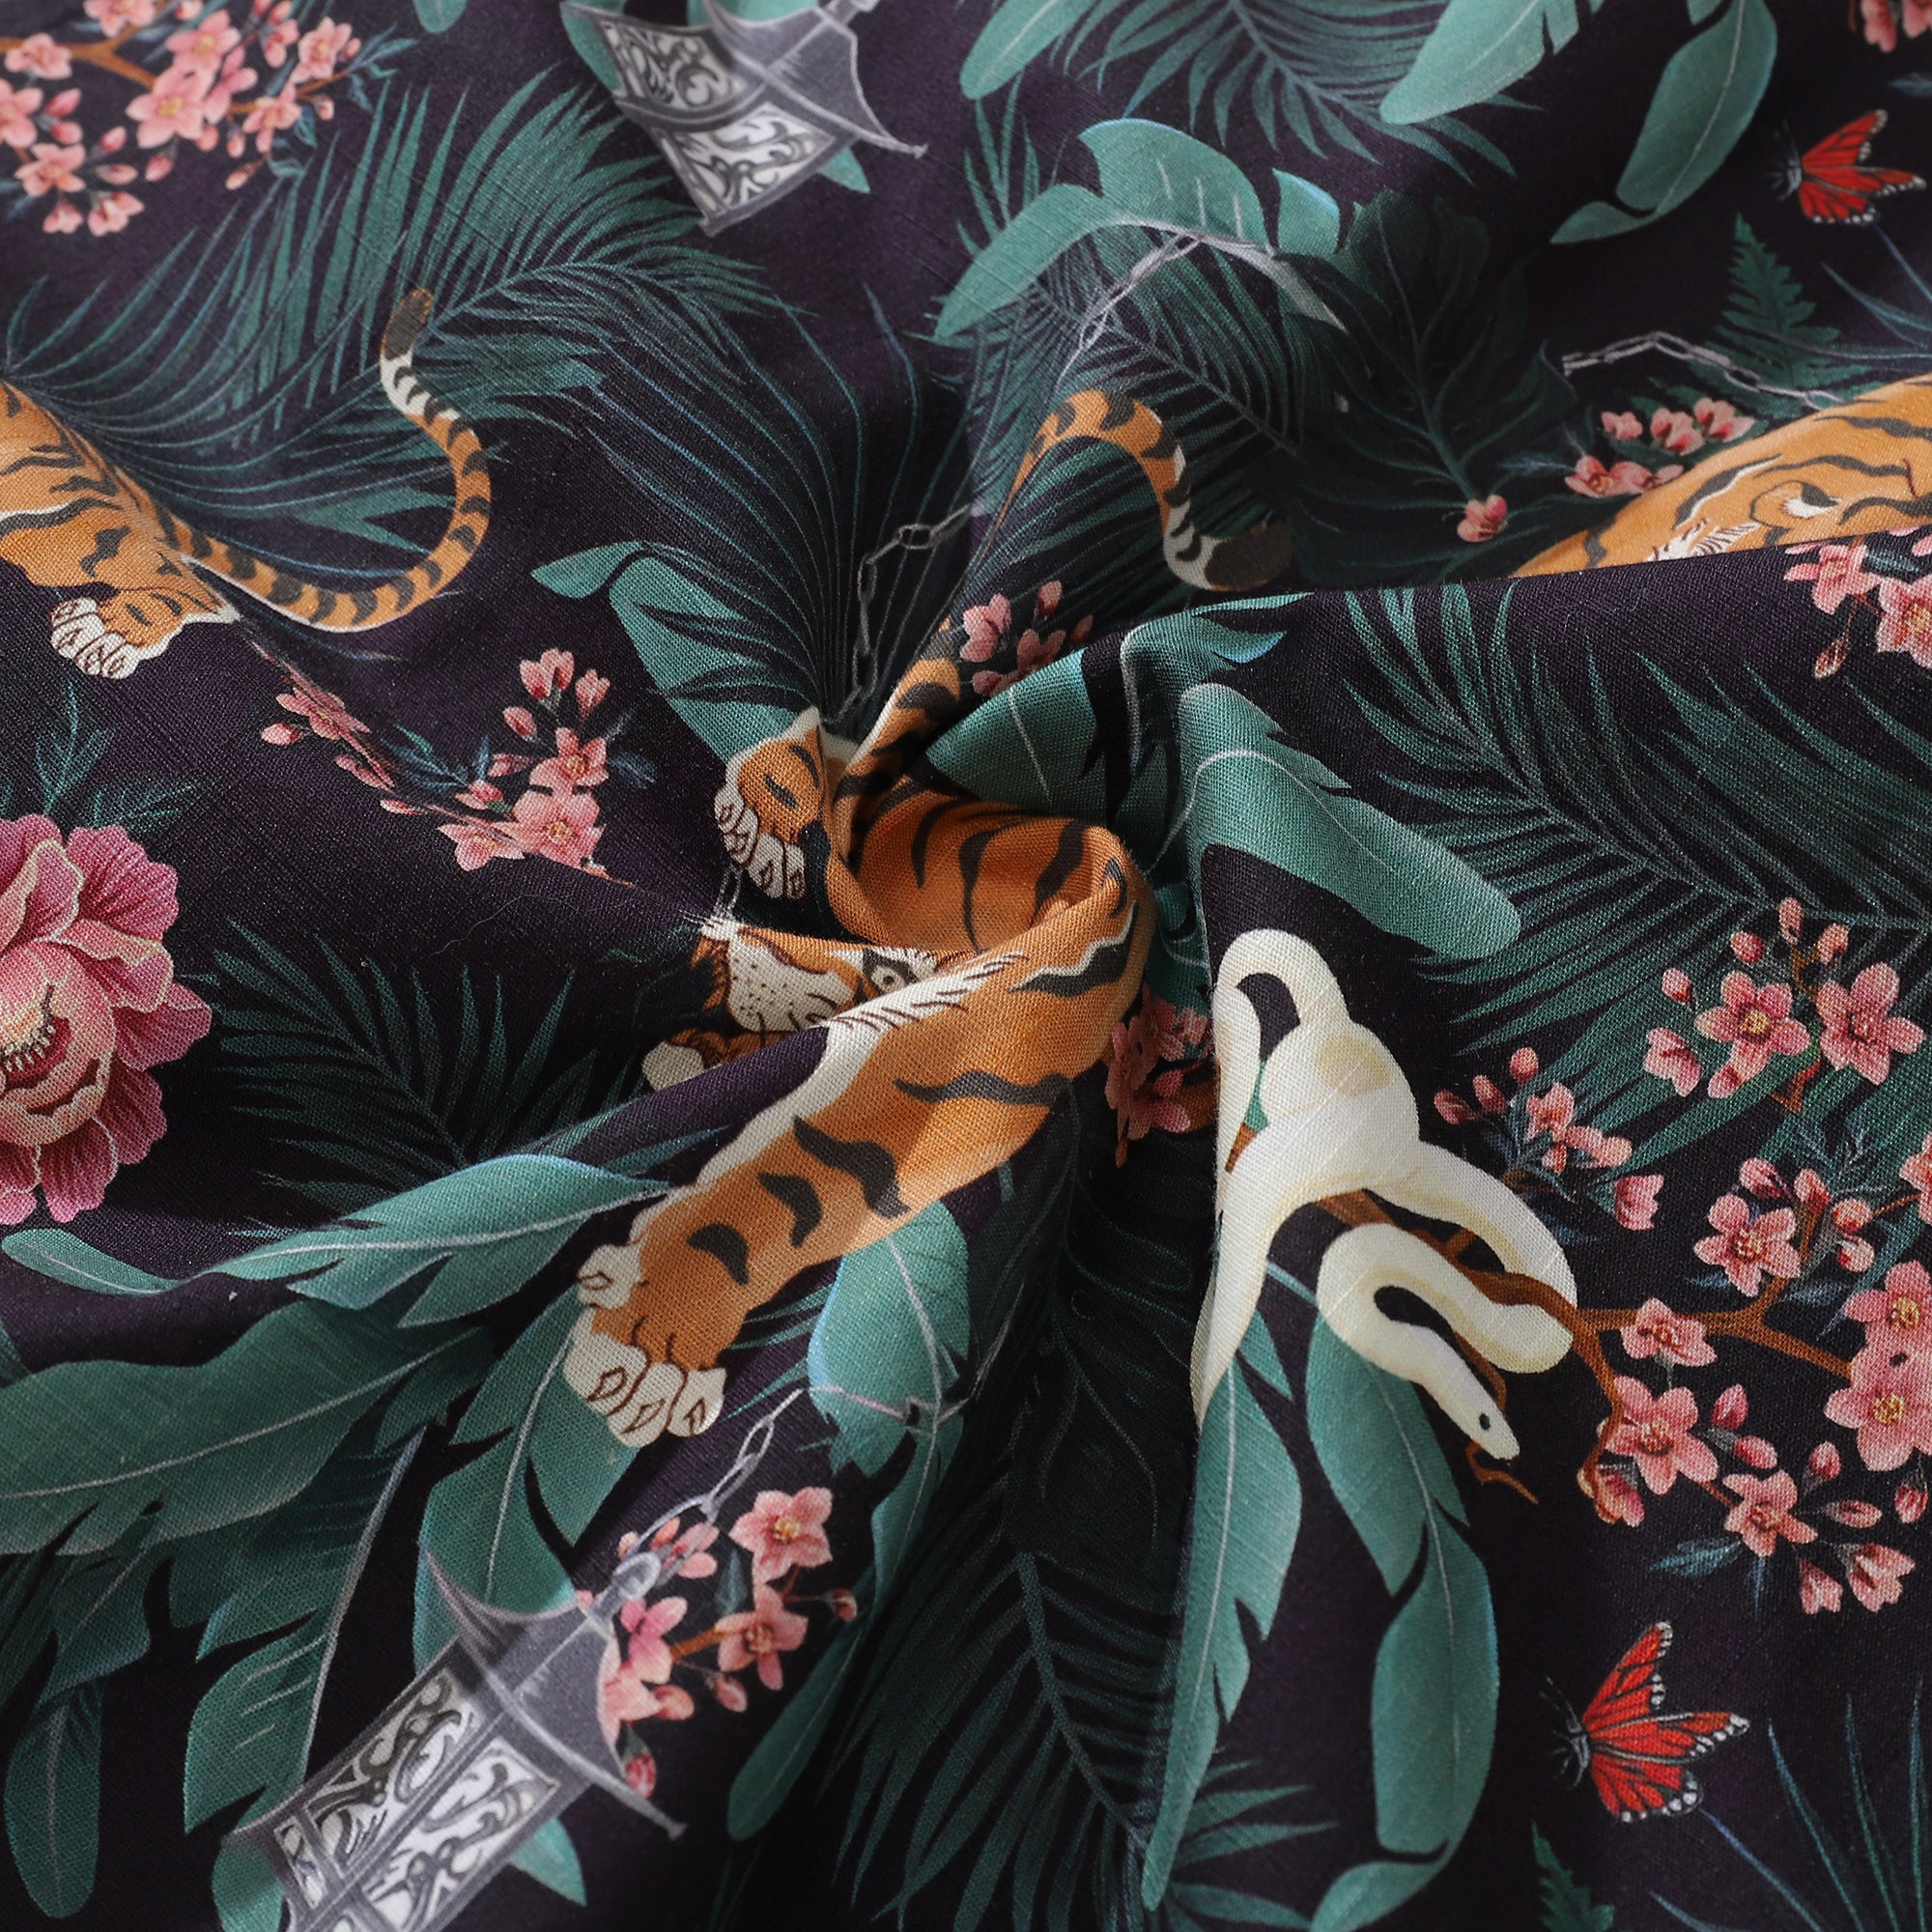 Camicia hawaiana da uomo Camicia con stampa tigre tra fiori Colletto camp 100% cotone